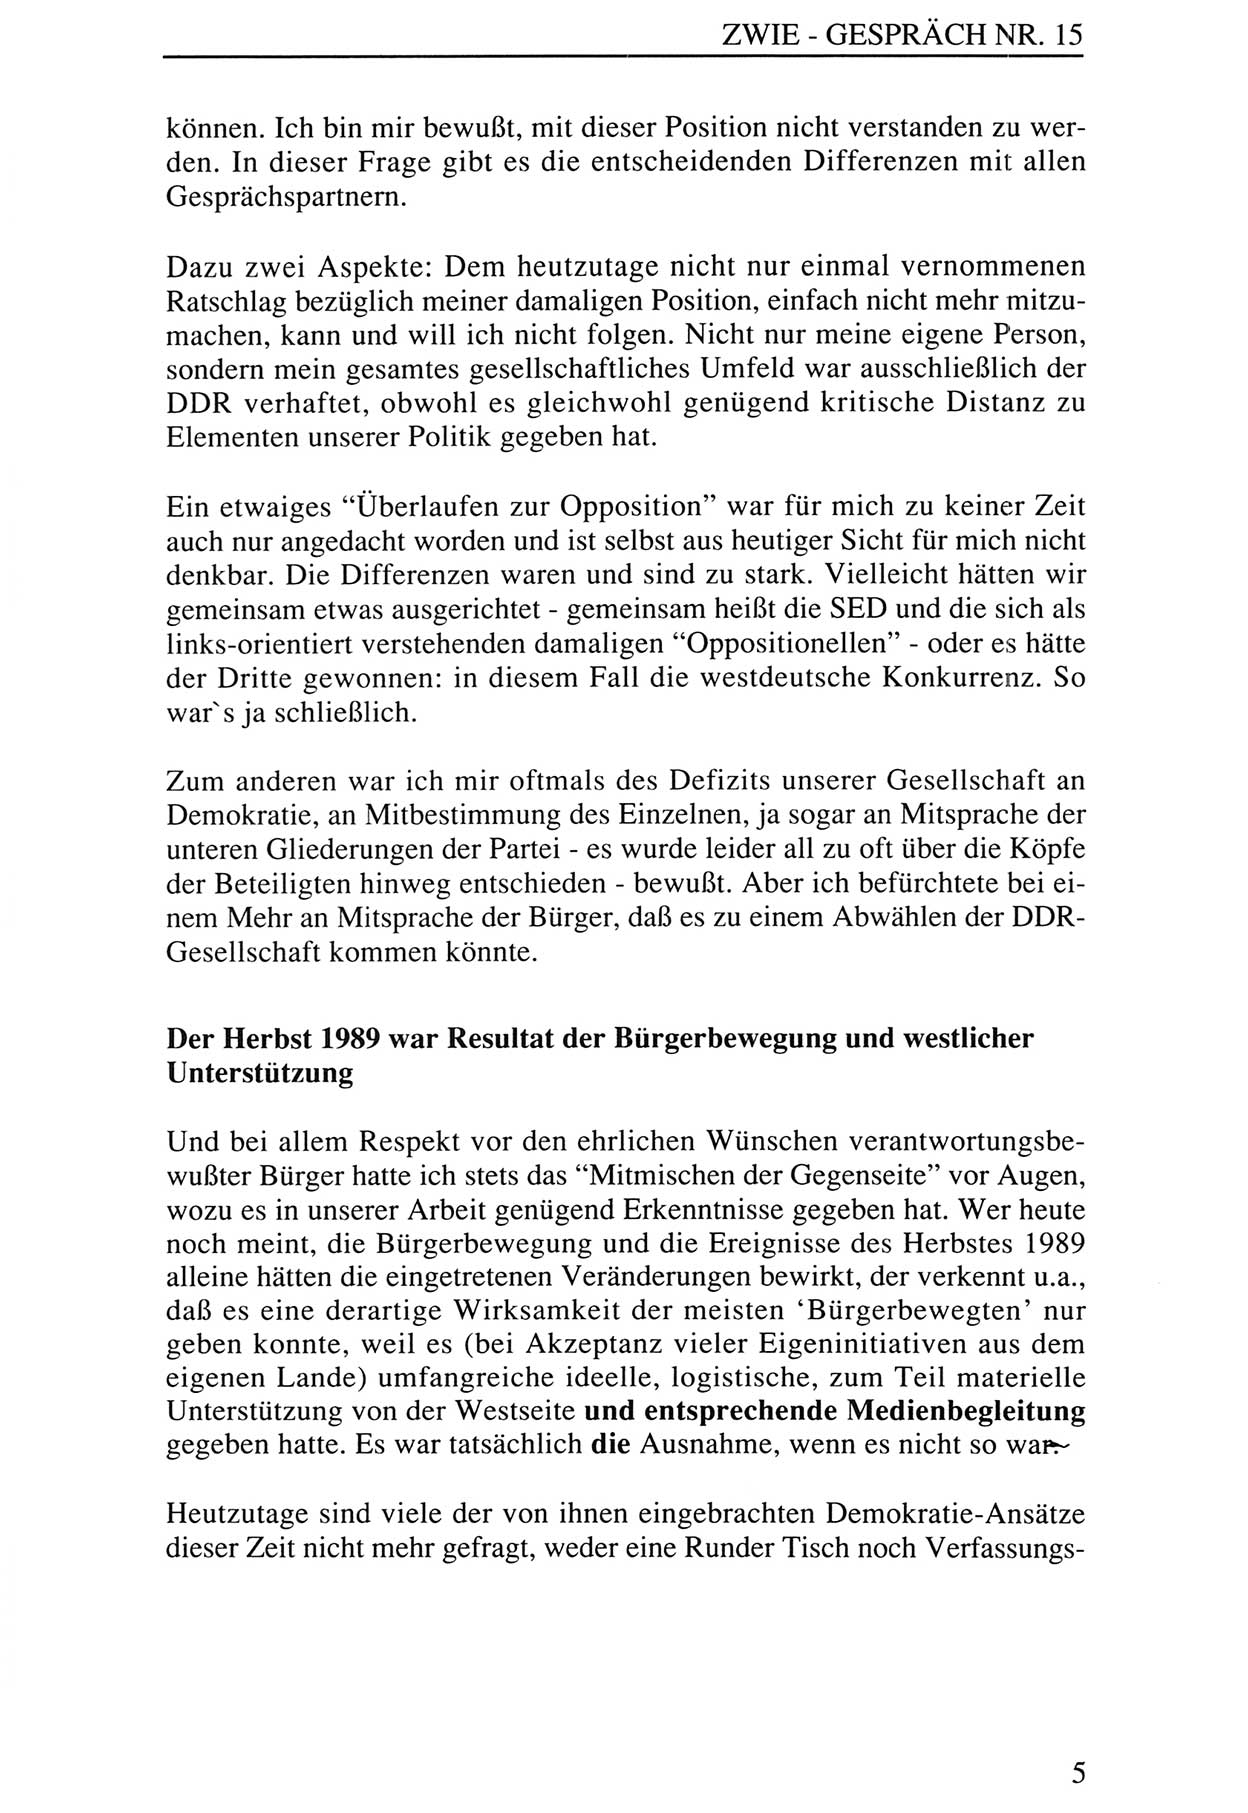 Zwie-GesprÃ¤ch, BeitrÃ¤ge zur Aufarbeitung der Staatssicherheits-Vergangenheit [Deutsche Demokratische Republik (DDR)], Ausgabe Nr. 15, Berlin 1993, Seite 5 (Zwie-Gespr. Ausg. 15 1993, S. 5)